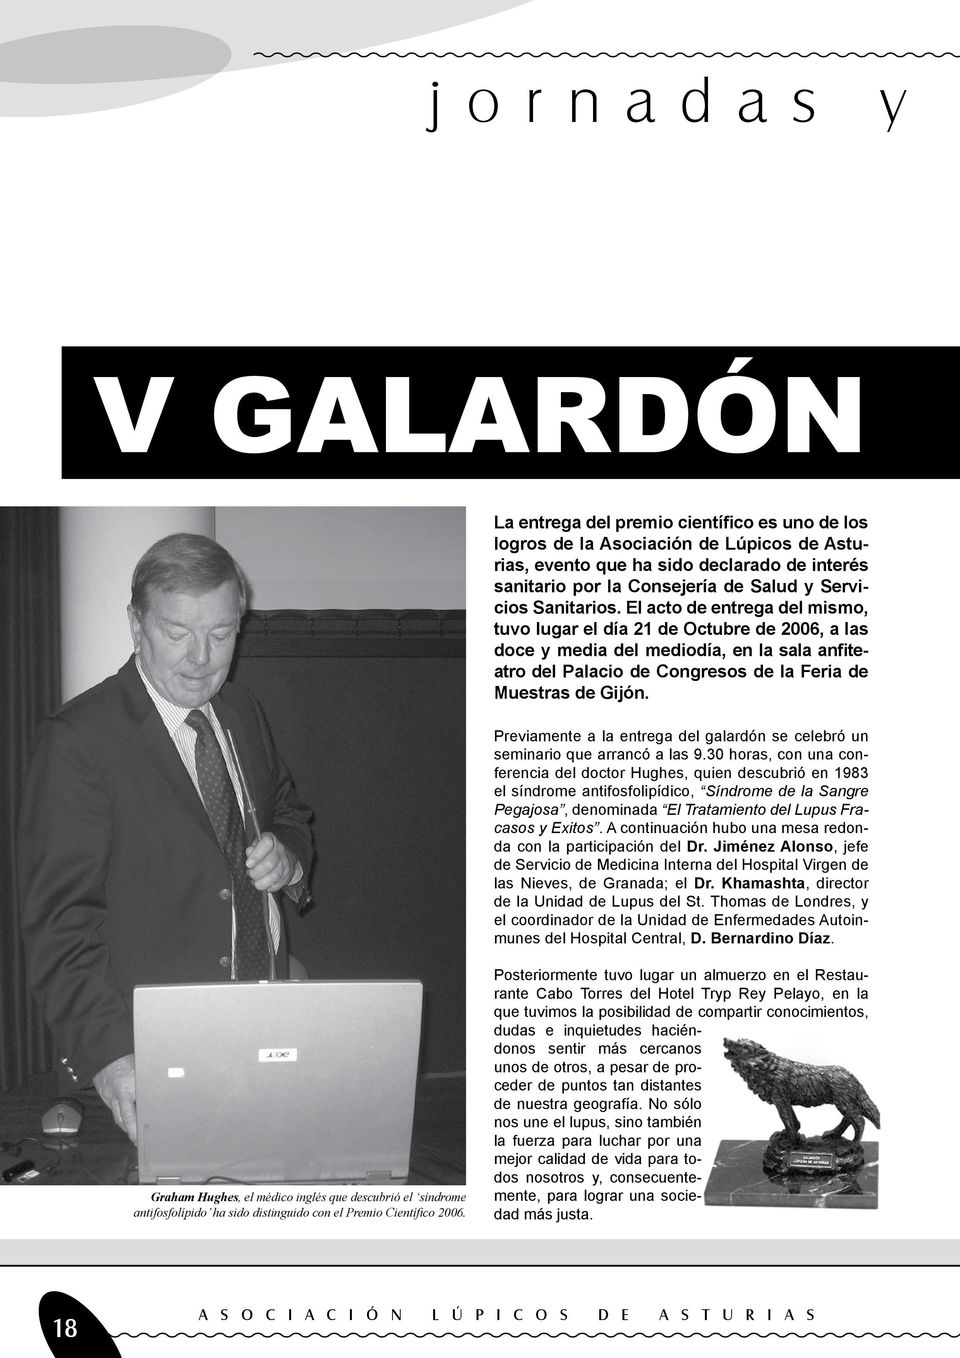 El acto de entrega del mismo, tuvo lugar el día 21 de Octubre de 2006, a las doce y media del mediodía, en la sala anfiteatro del Palacio de Congresos de la Feria de Muestras de Gijón.